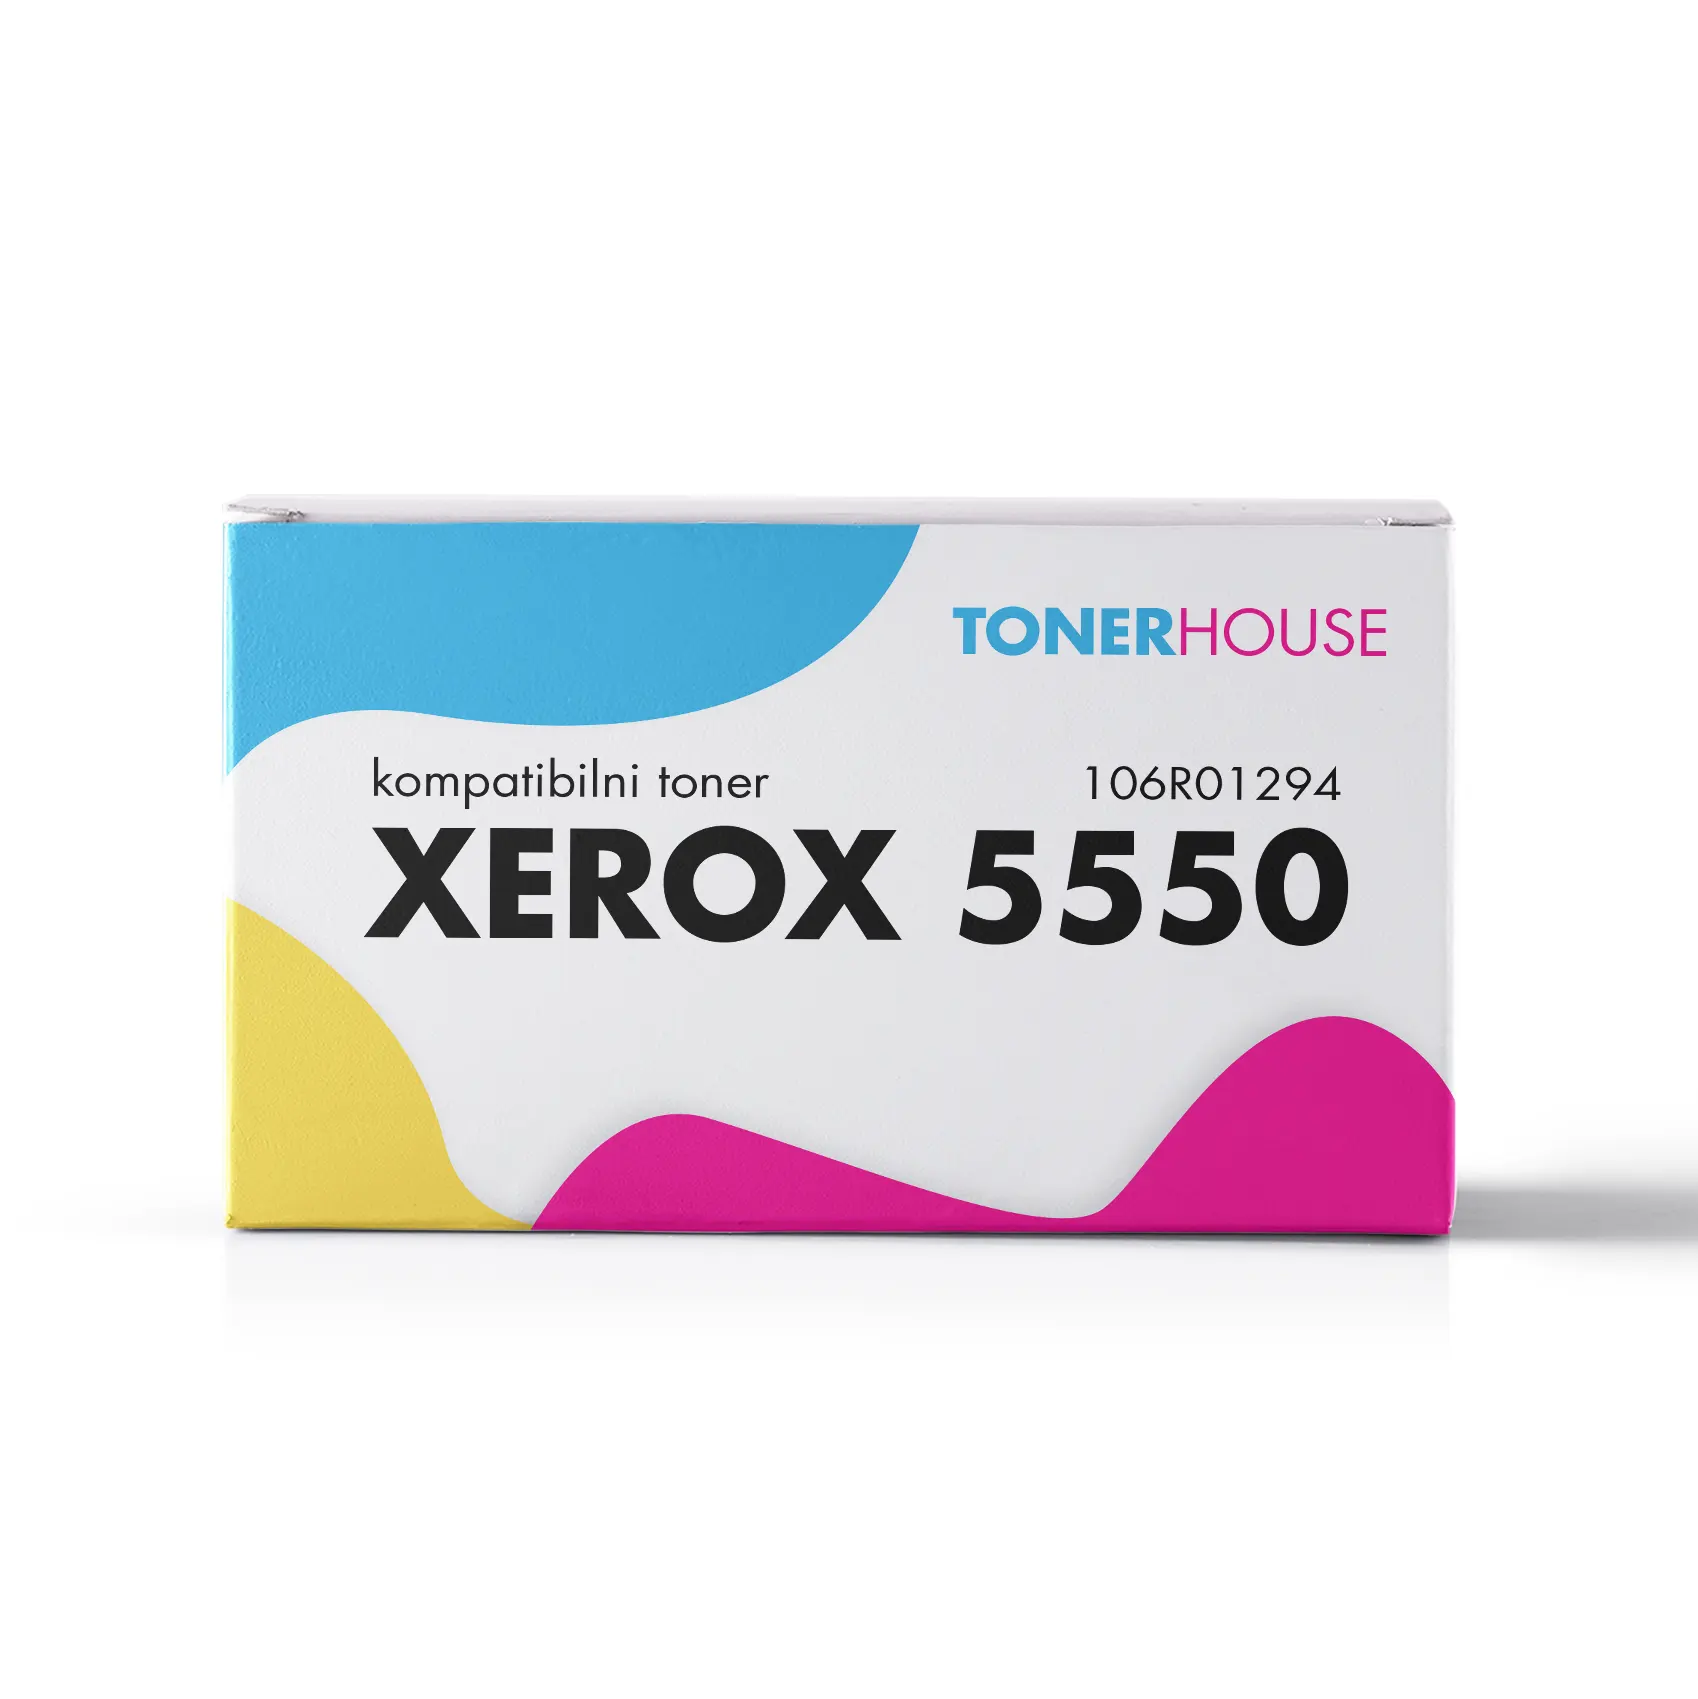 Xerox 5550 Toner Kompatibilni